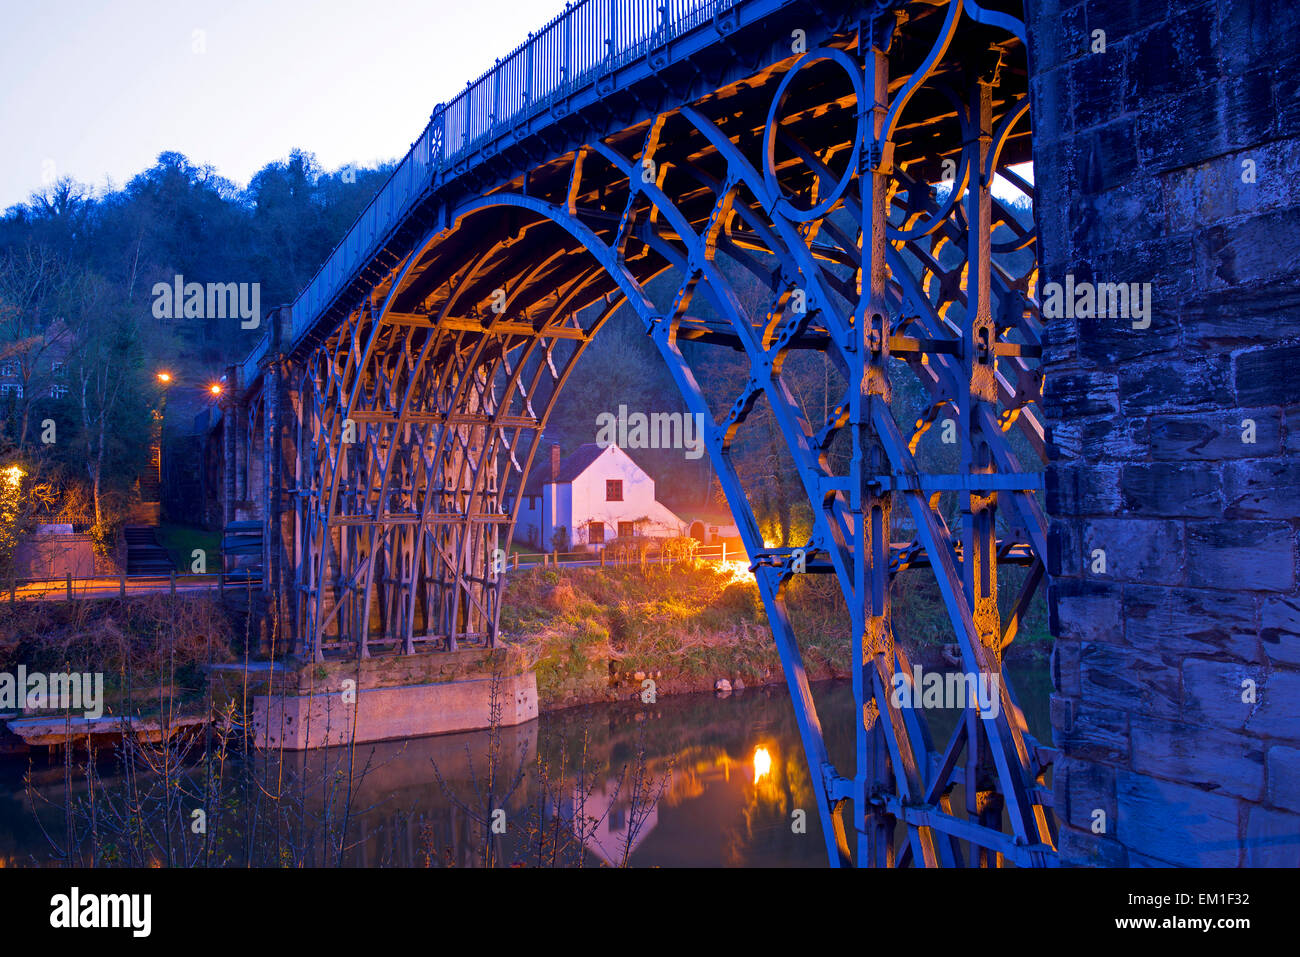 The iron bridge at night, Ironbridge, Shropshire, England uk Stock Photo